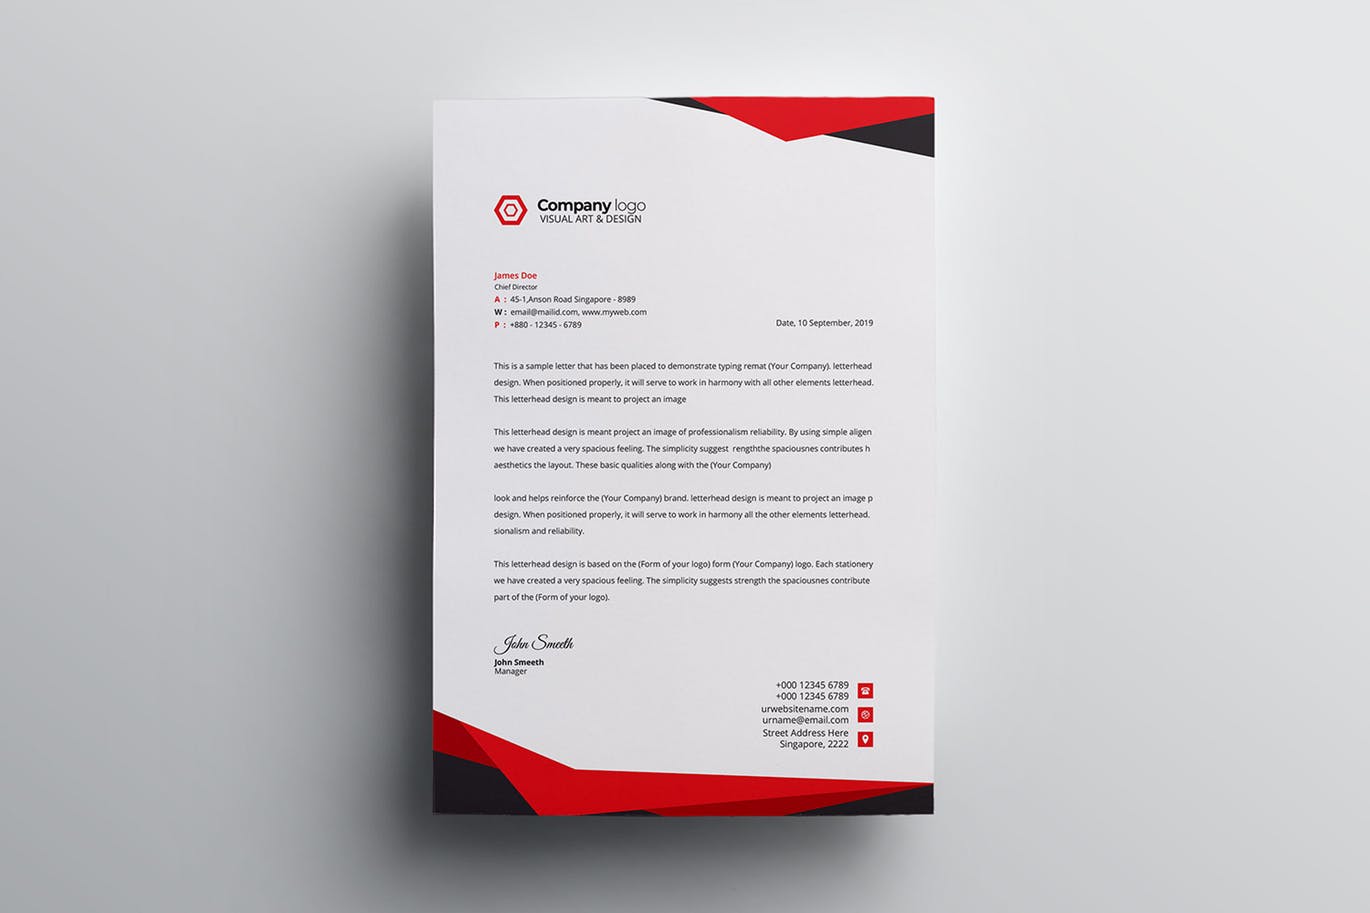 信息科技企业信封设计模板v4 Letterhead插图(3)